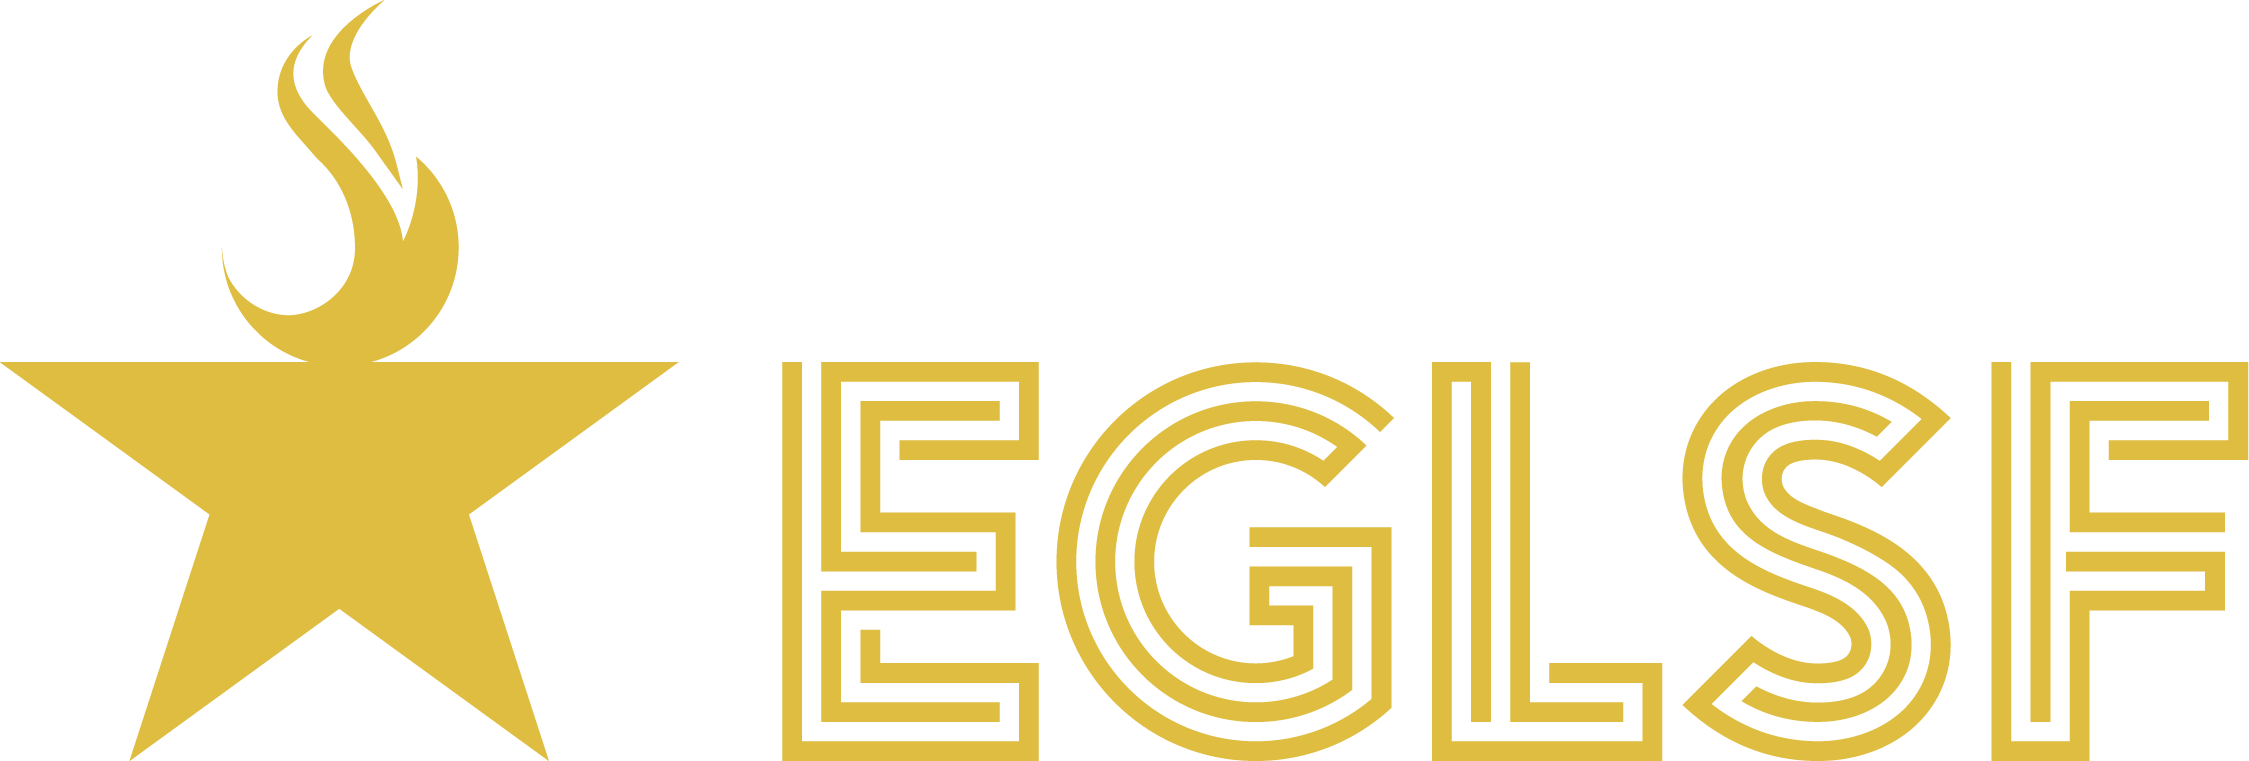 EGLSF.info Logo